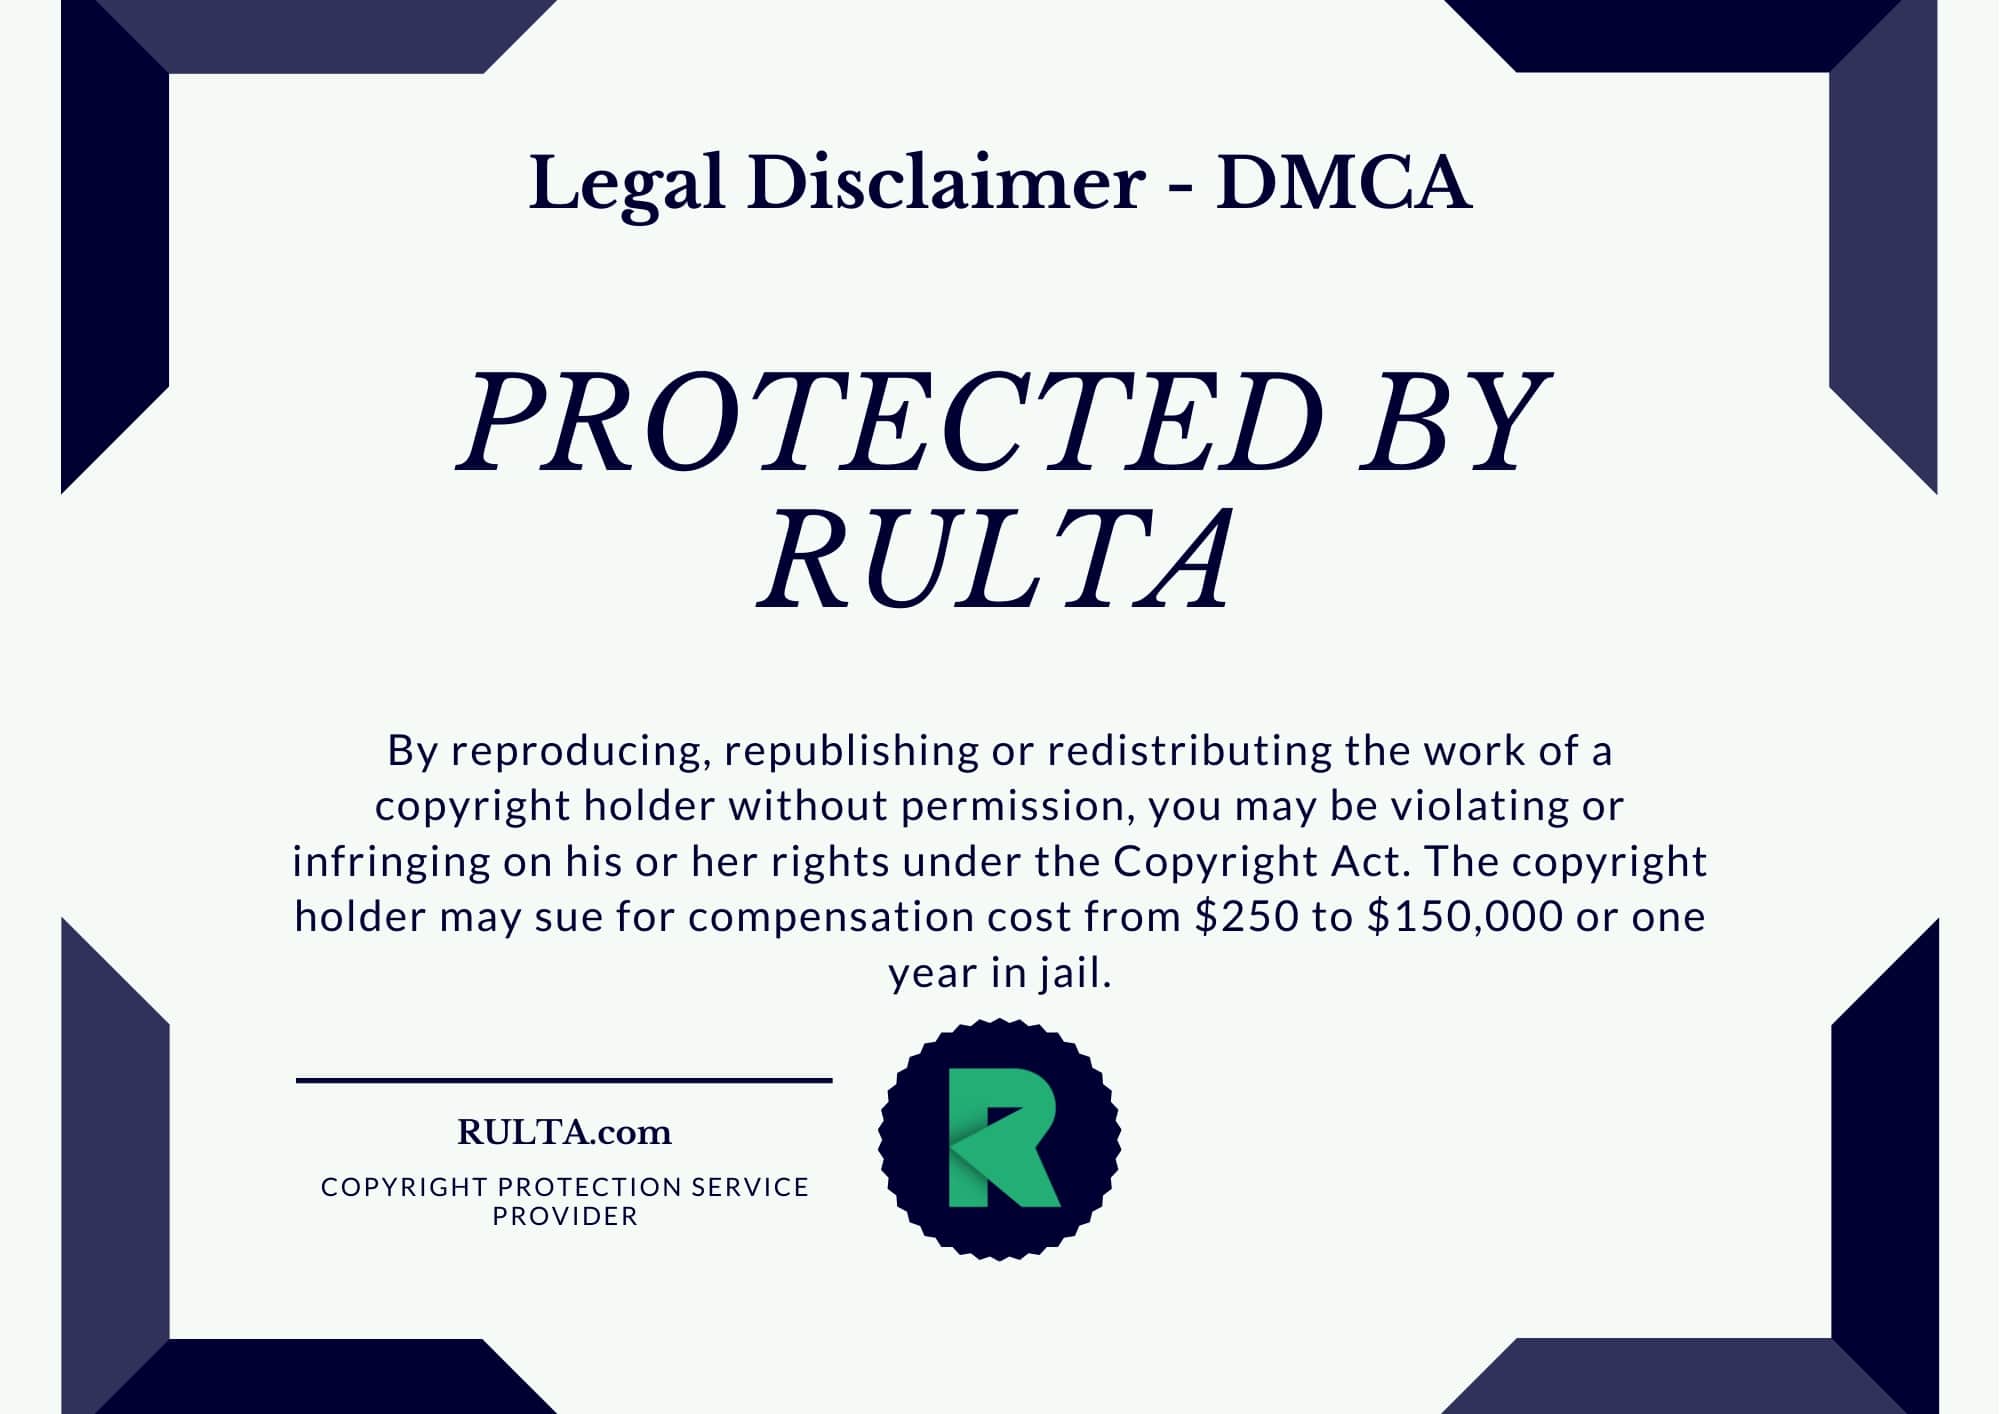 DMCA badge by Rulta - 9